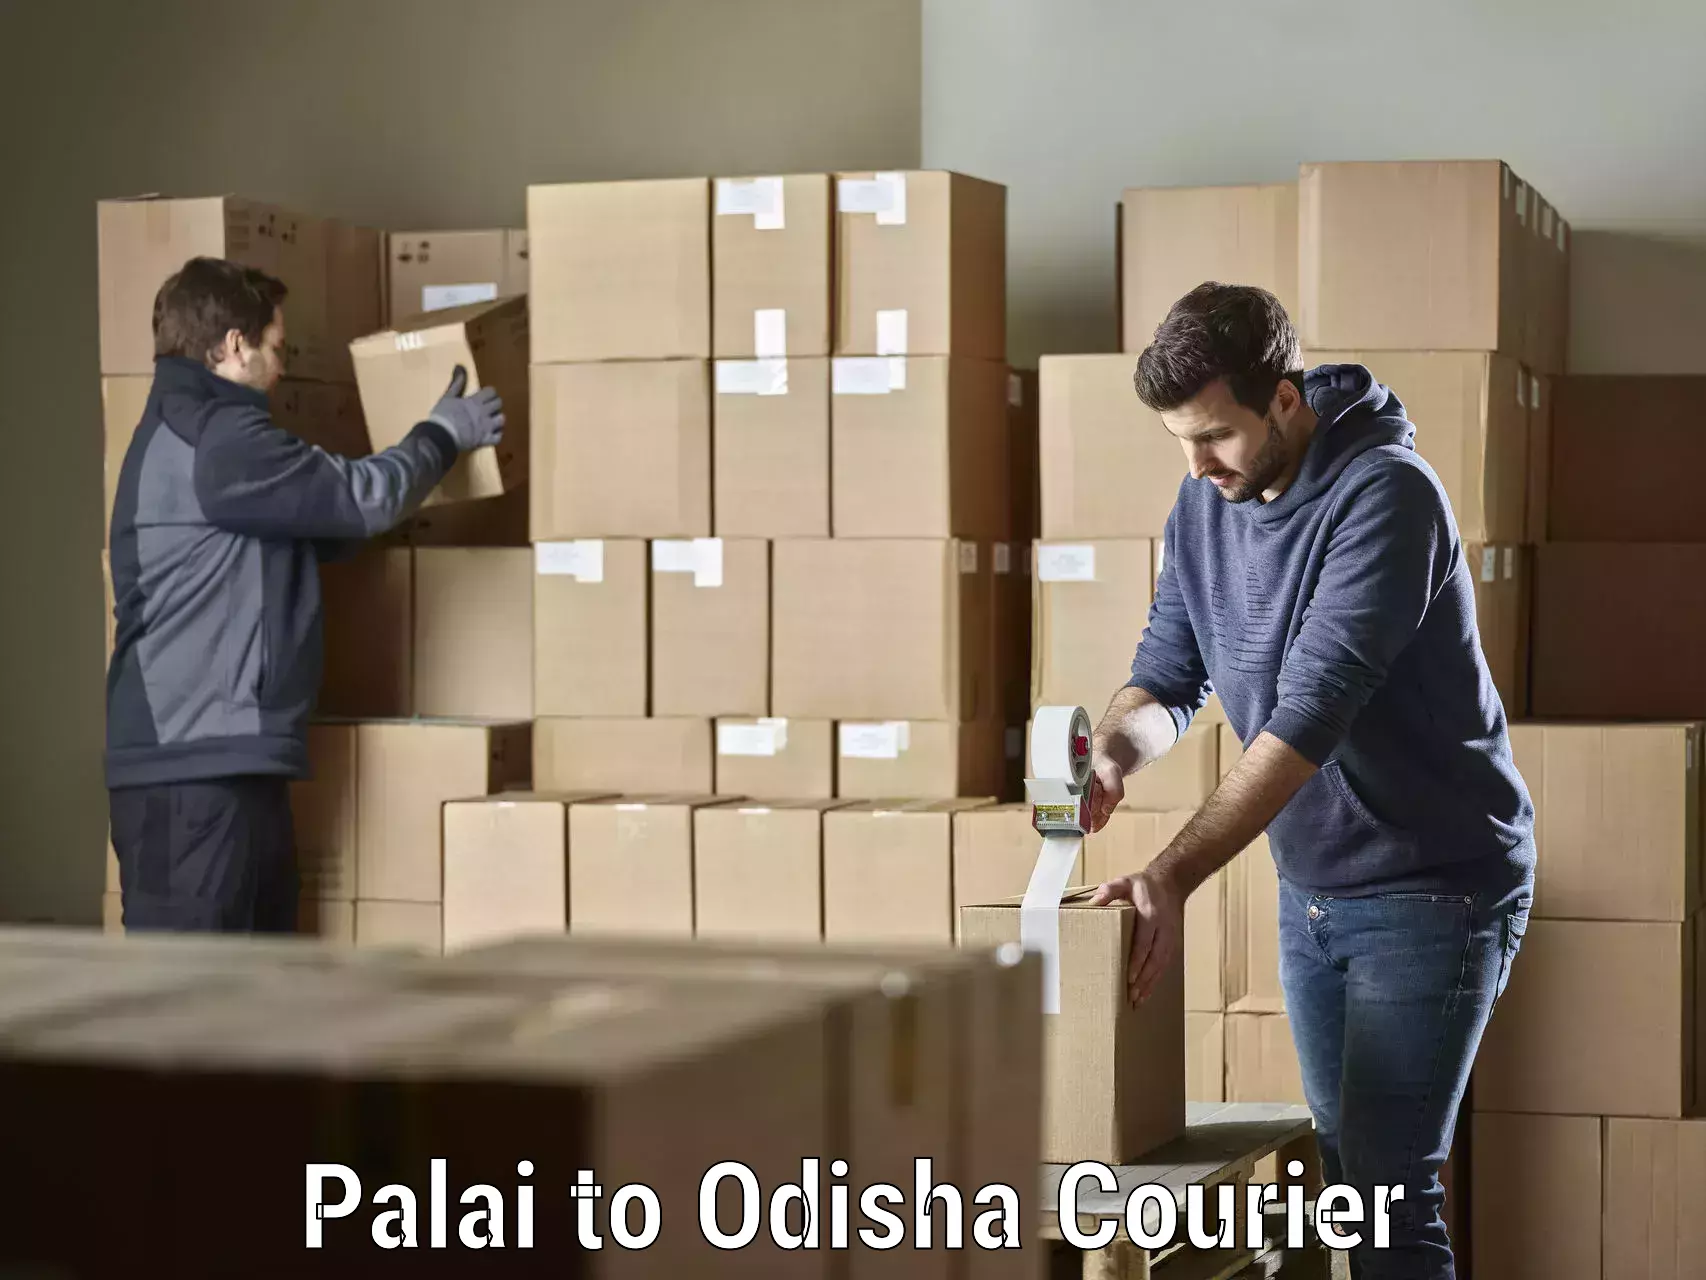 High-capacity parcel service Palai to Balikuda